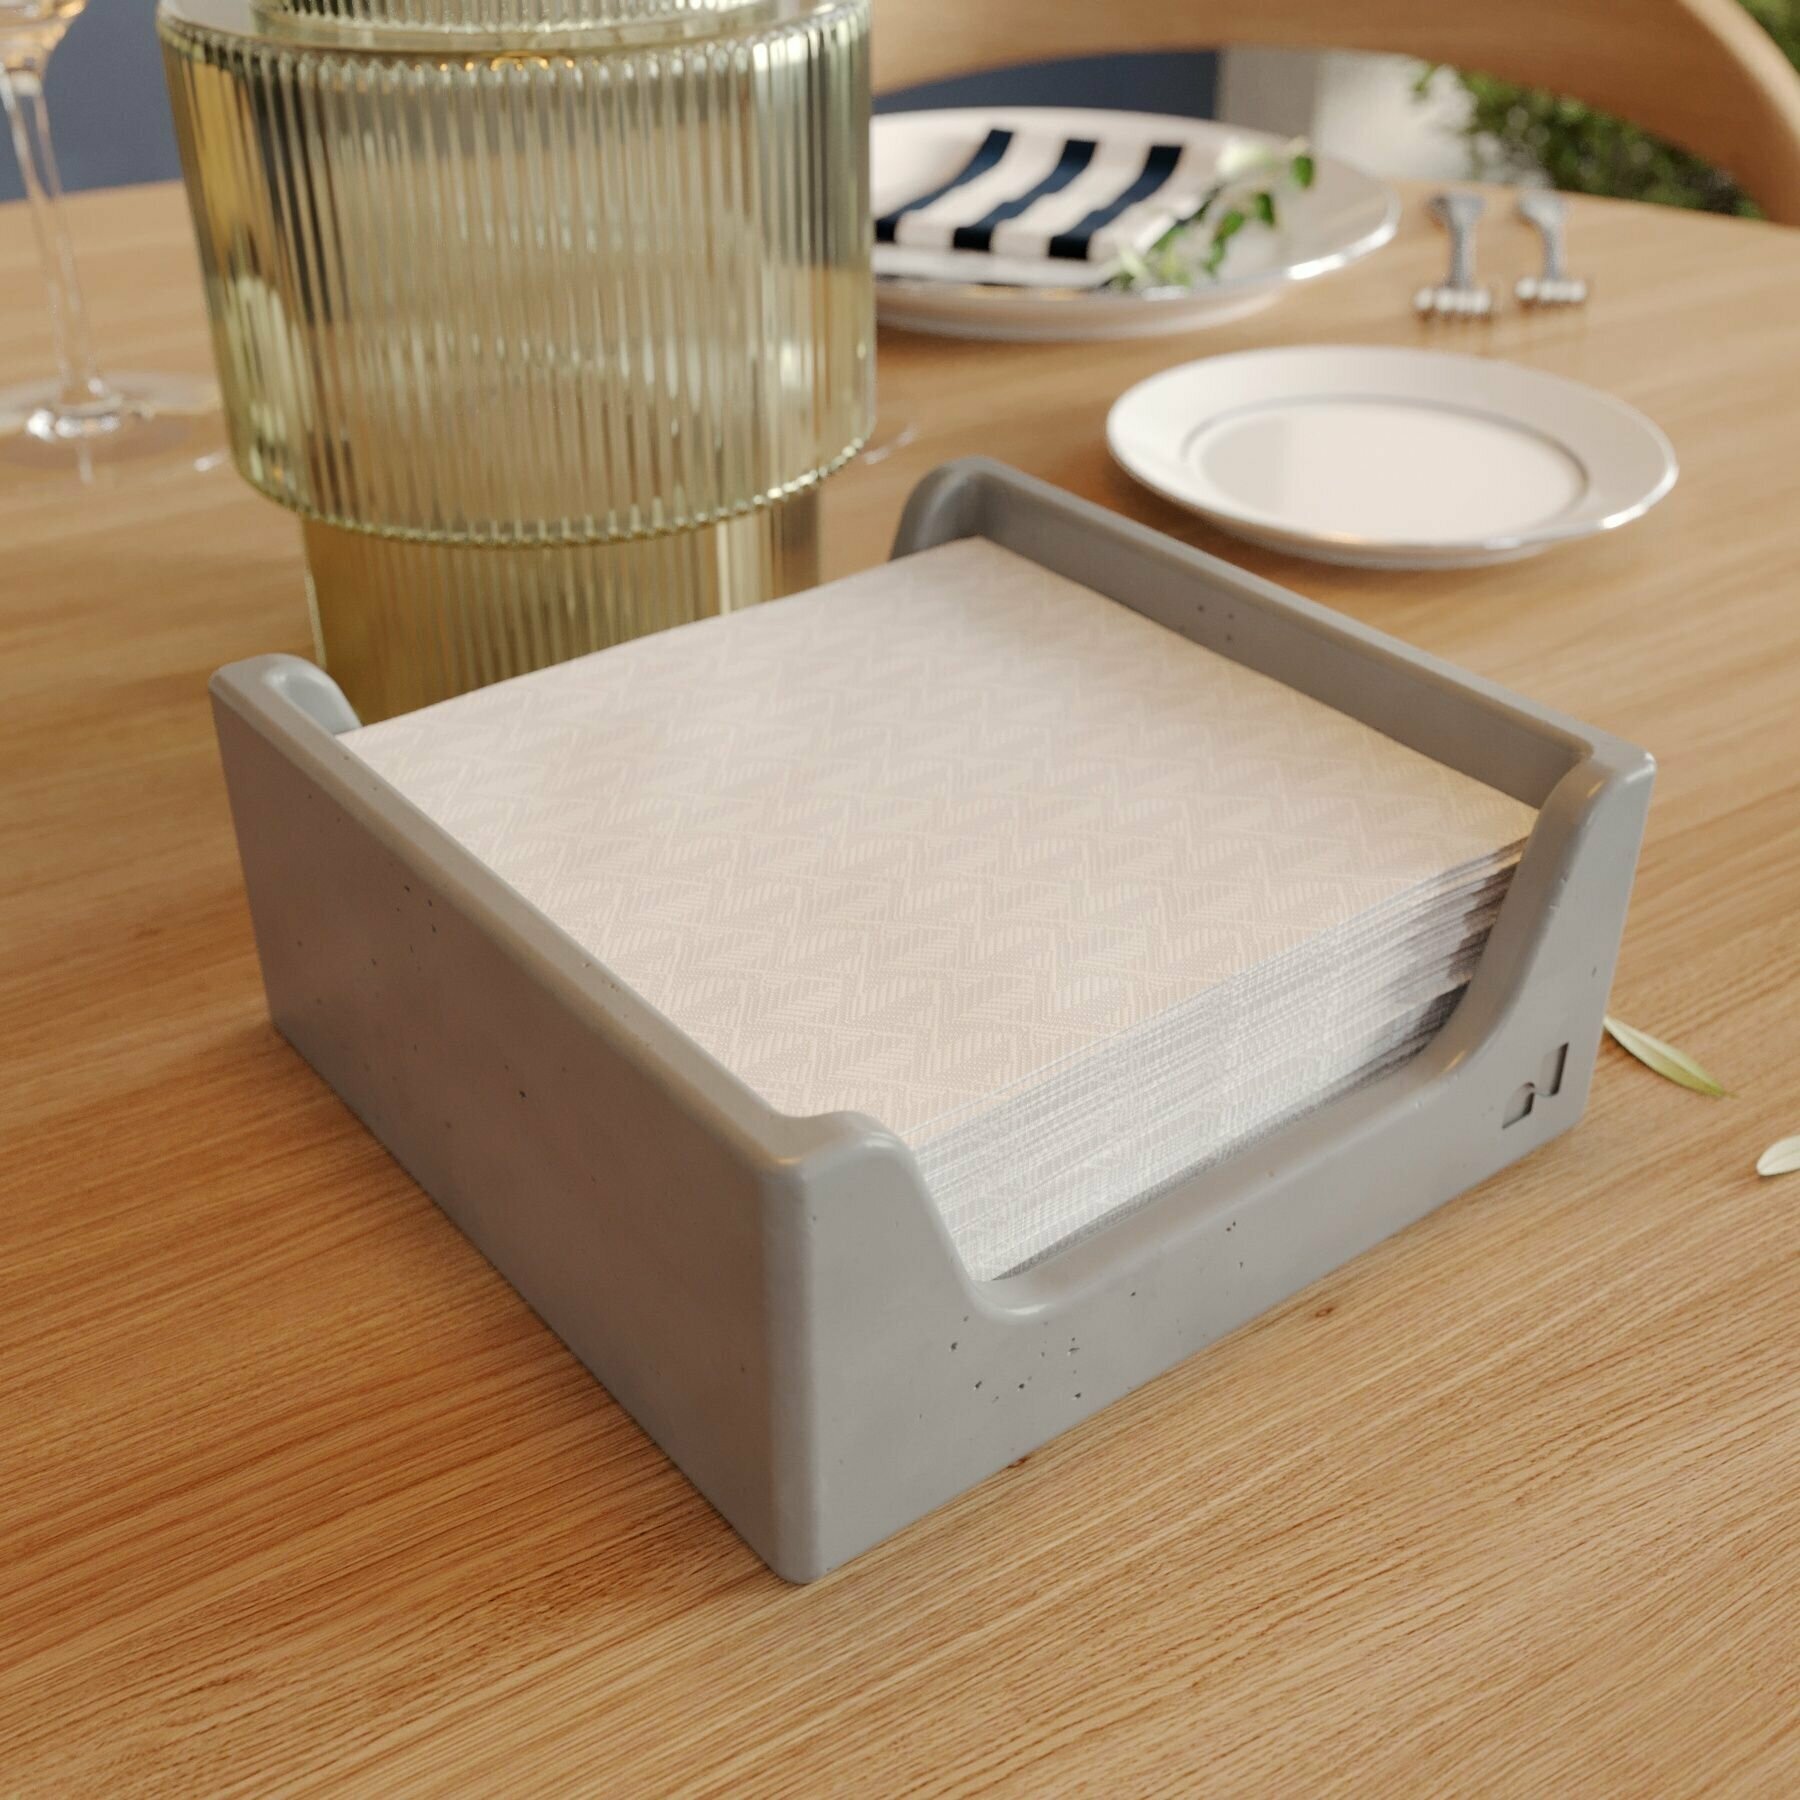 Салфетница на стол для кухни, аксессуар интерьерный для сервировки "Lyon" арт бетон глянцевая, серая